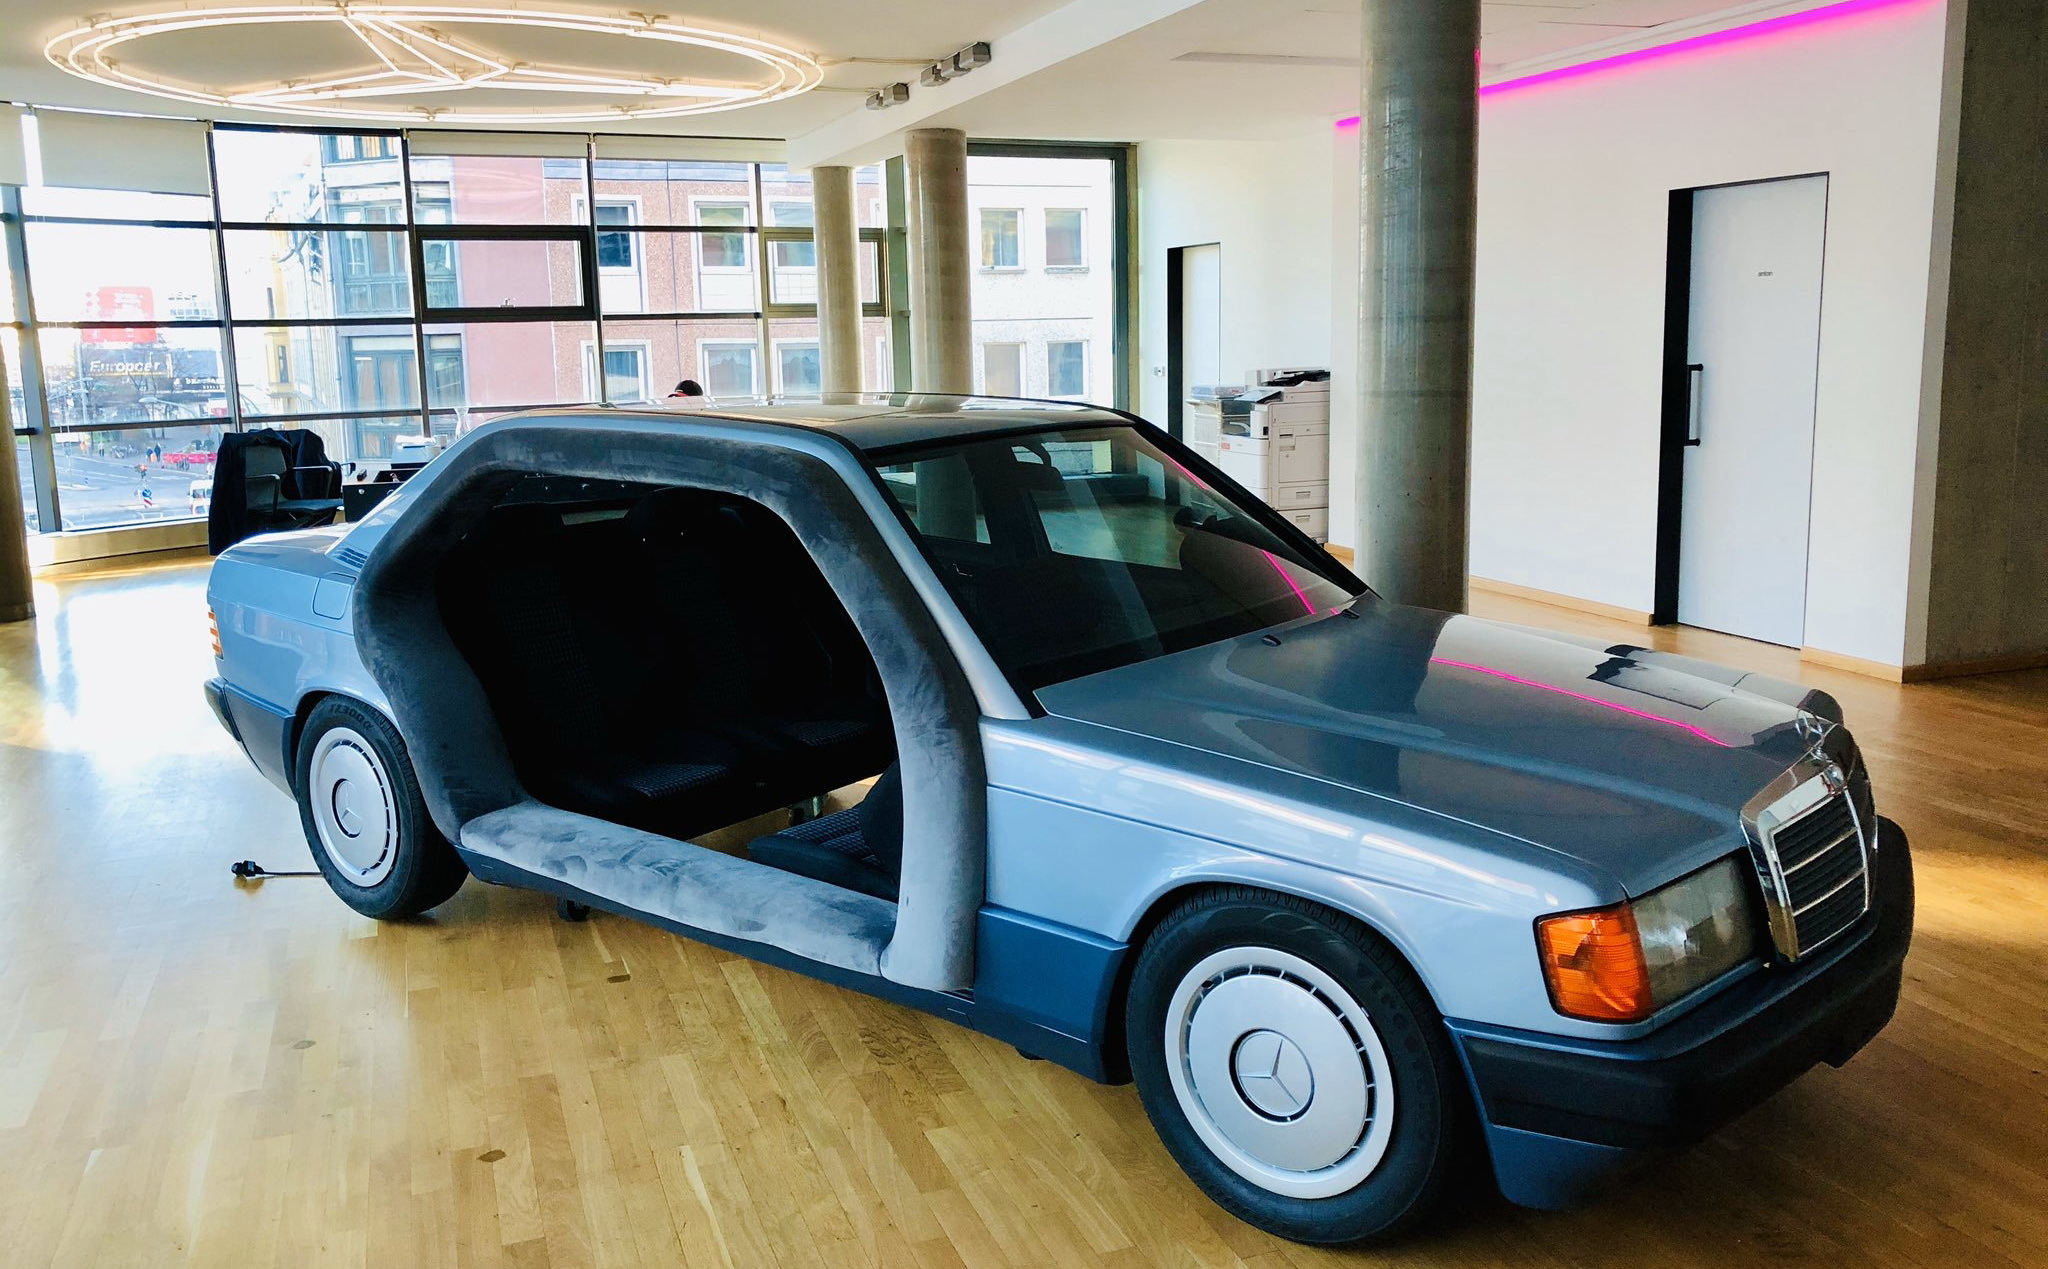 Παλιά Mercedes μεταμορφώθηκε στο πιο περίεργο meeting room που έχεις δει! [pics]